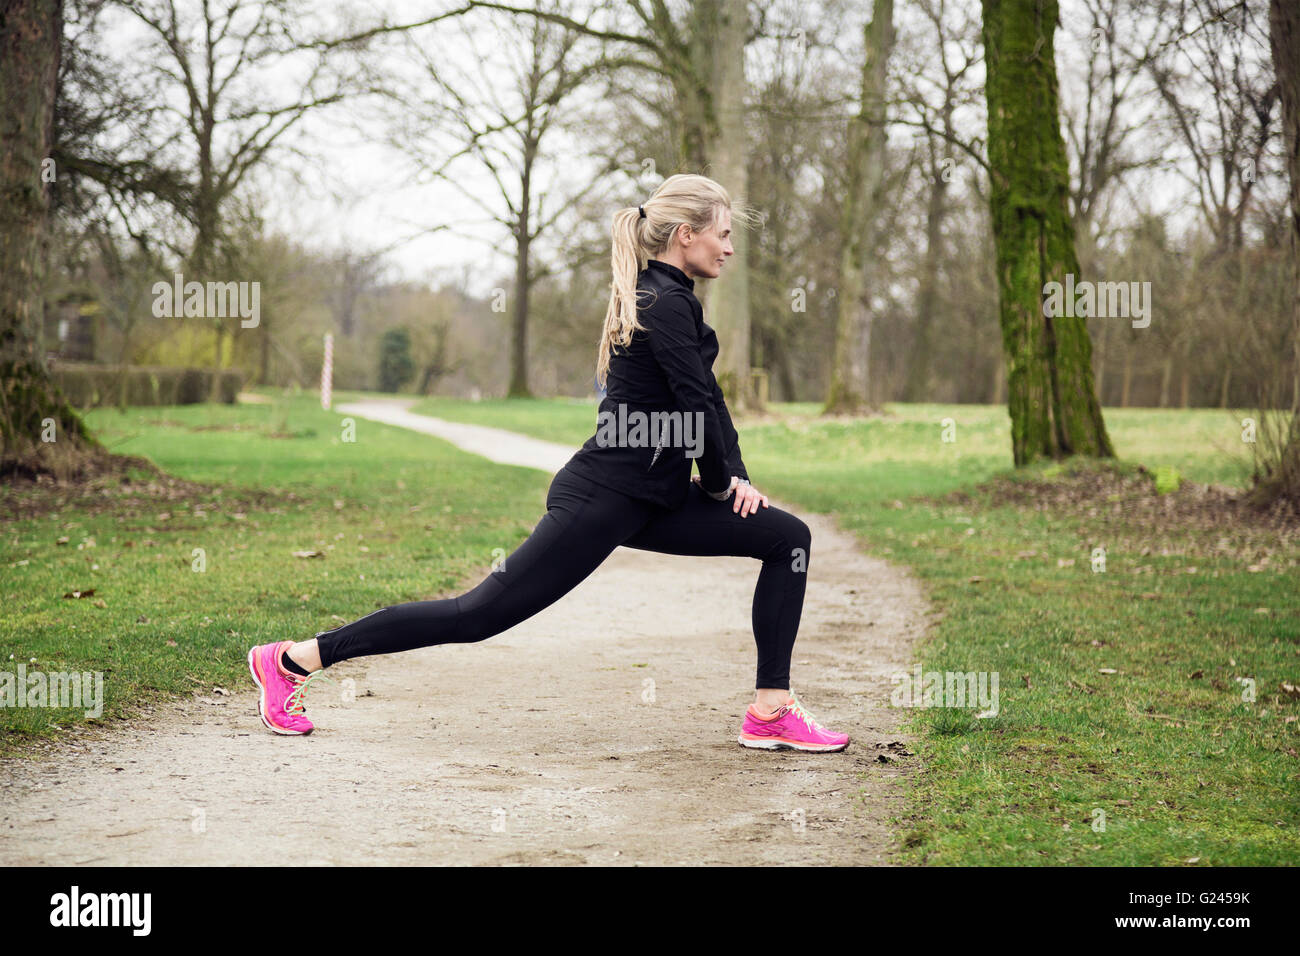 Mujer estirar sus piernas en el parque antes de tener una carrera. Invierno frío día con actividad deportiva Foto de stock